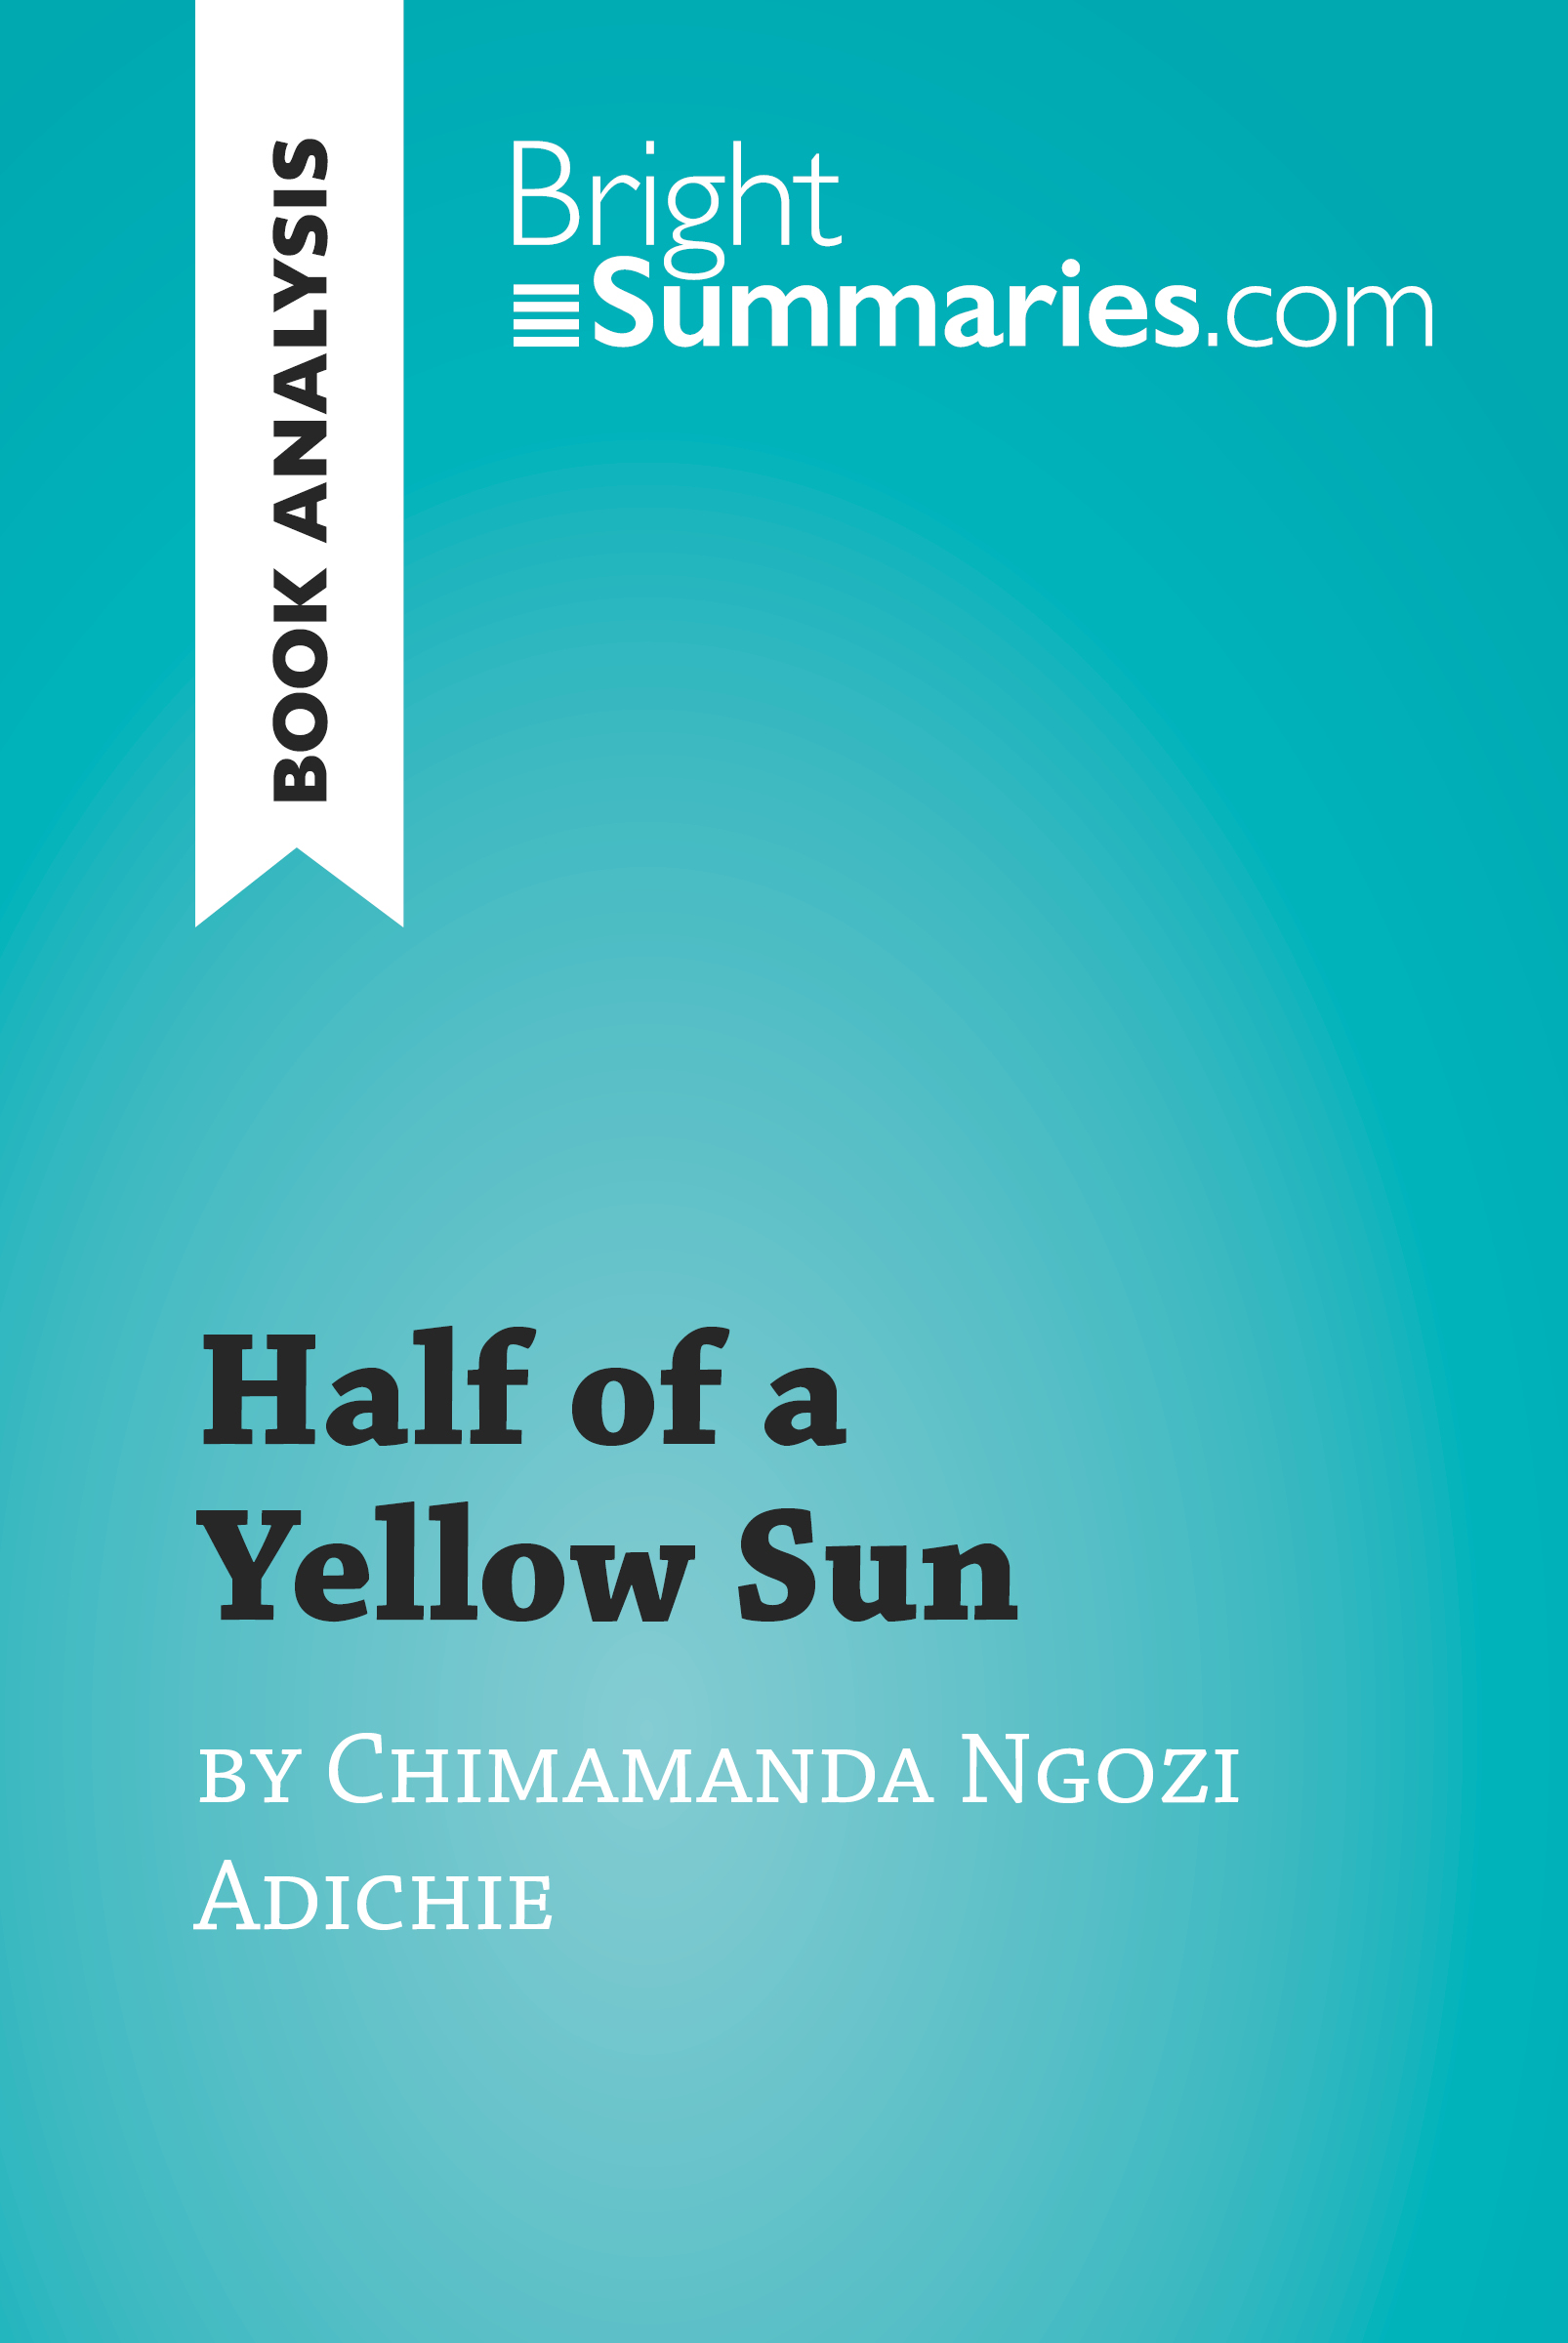 Half of a Yellow Sun by Chimamanda Ngozi Adichie (Book Analysis)